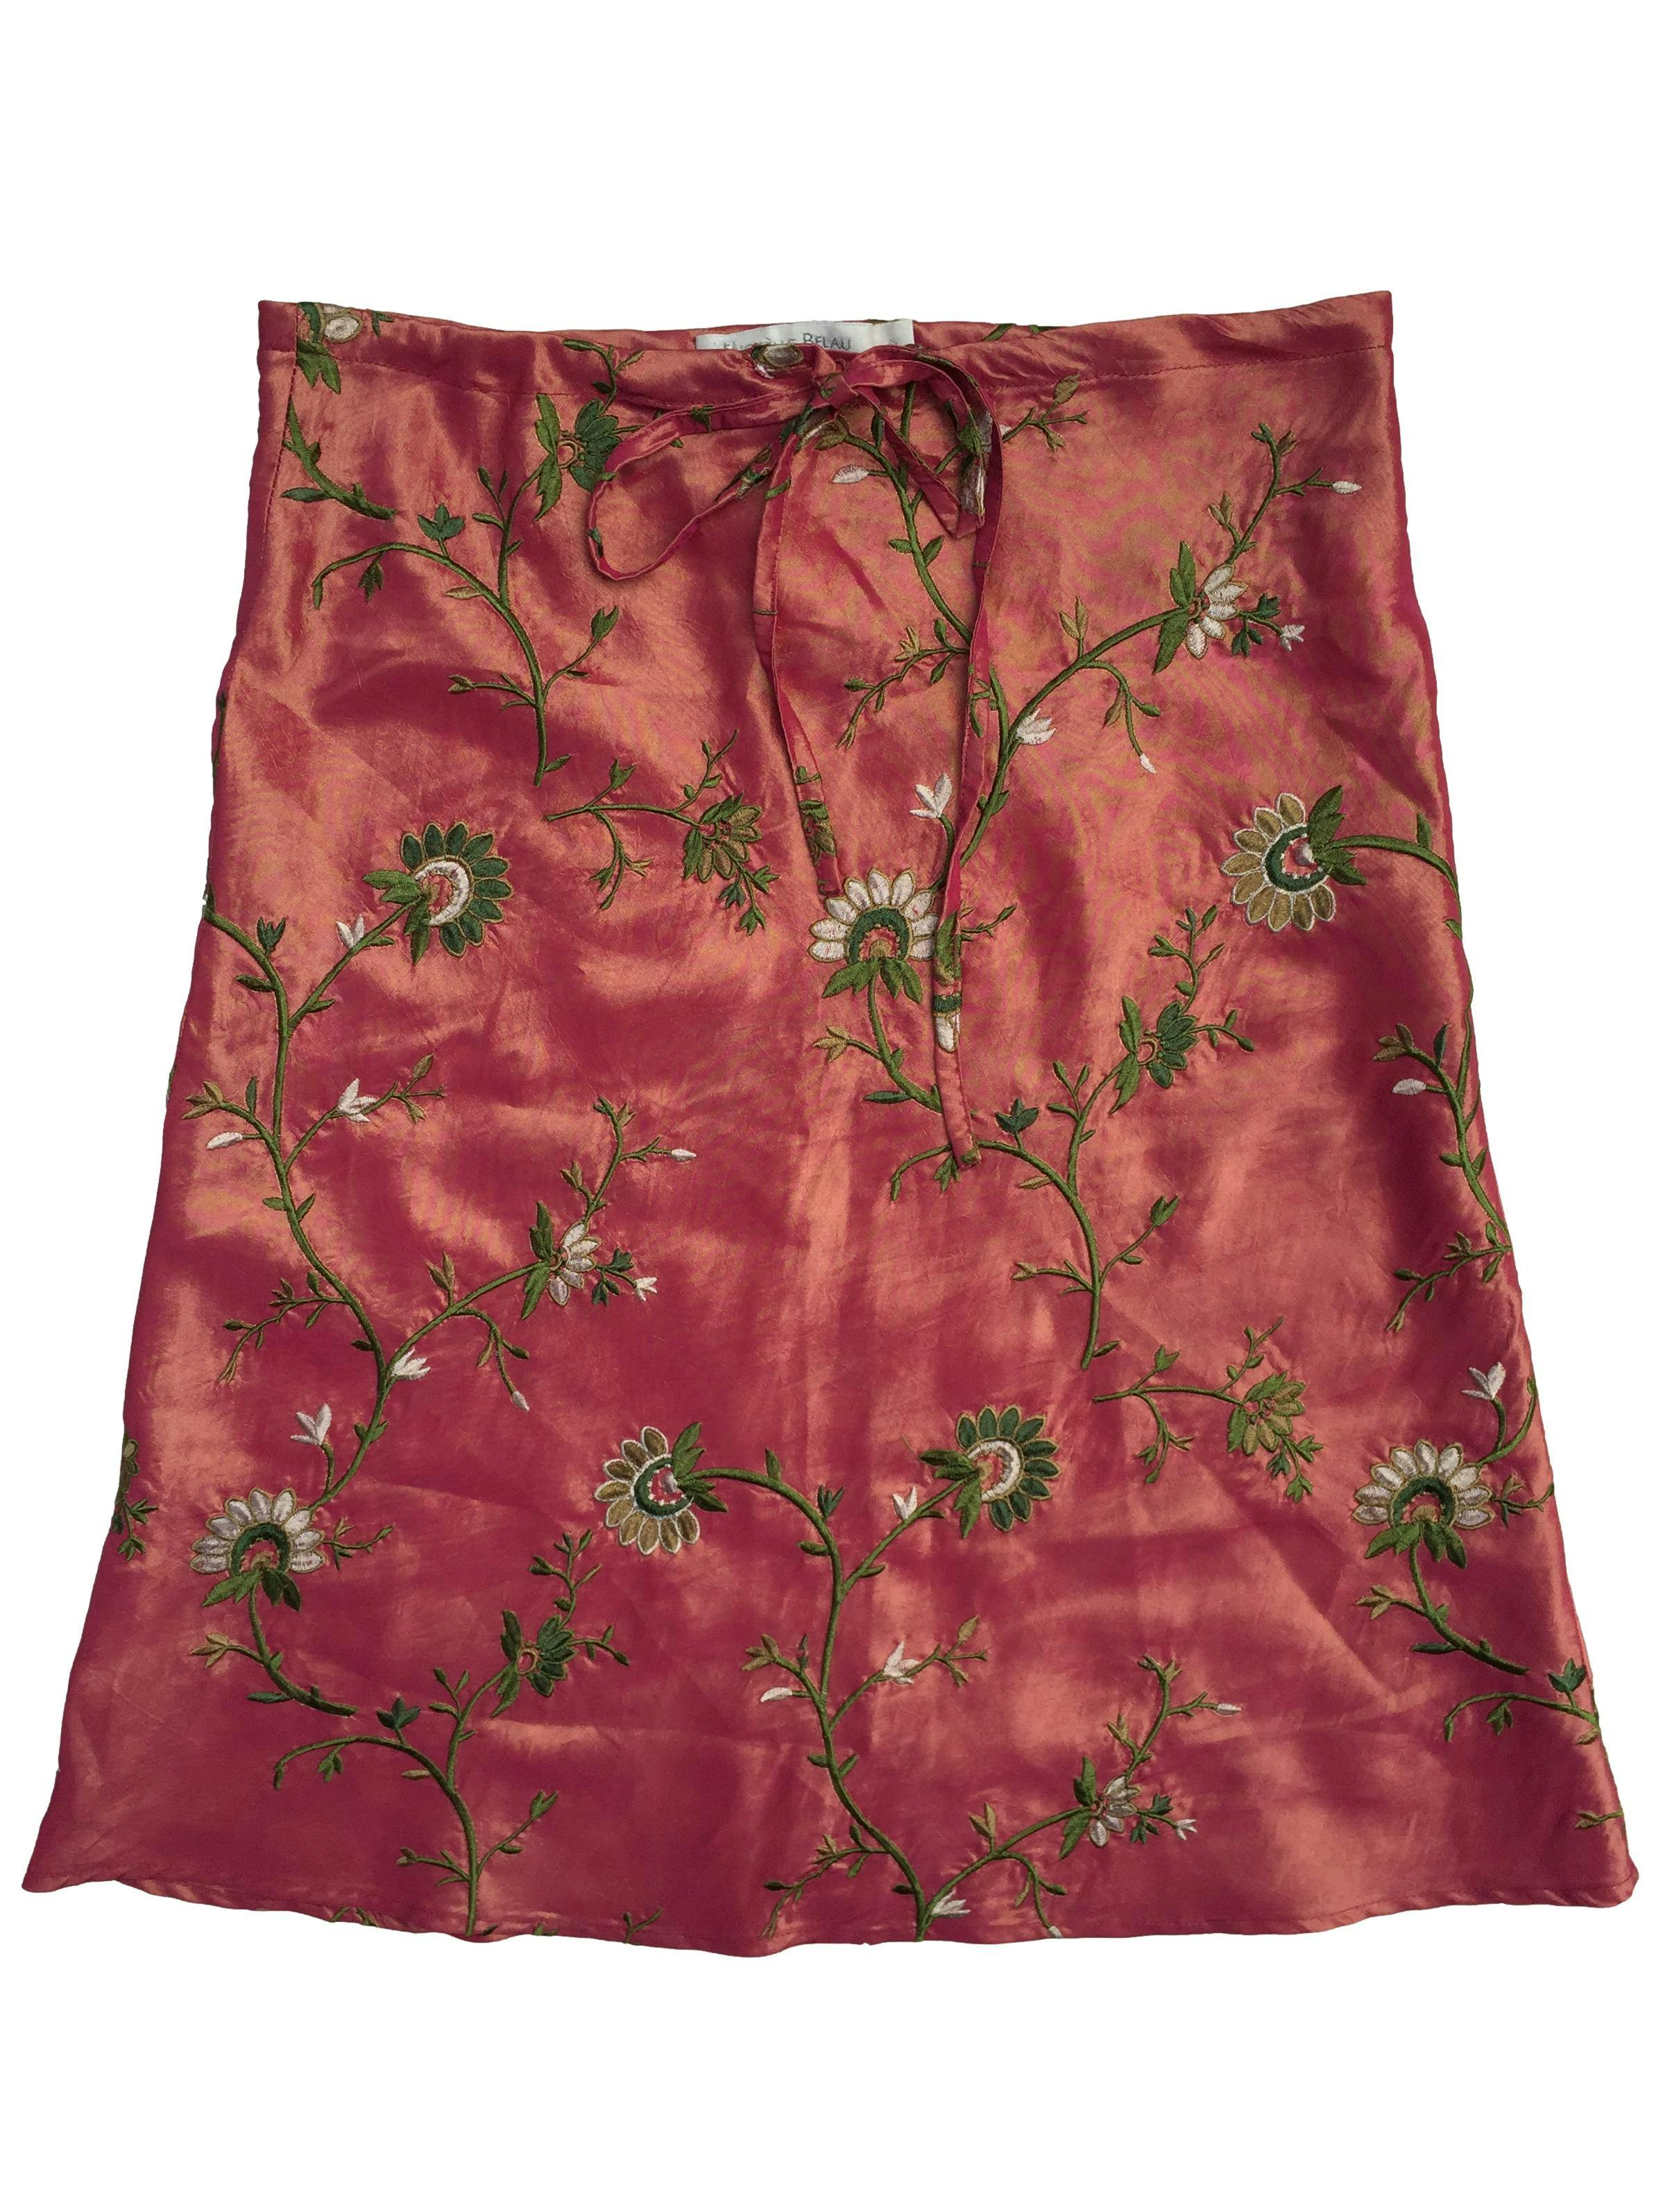 Falda Michelle Belau rosada con bordado de flores, cintos ajustables. Cintura 76 cm, Largo 58 cm. 